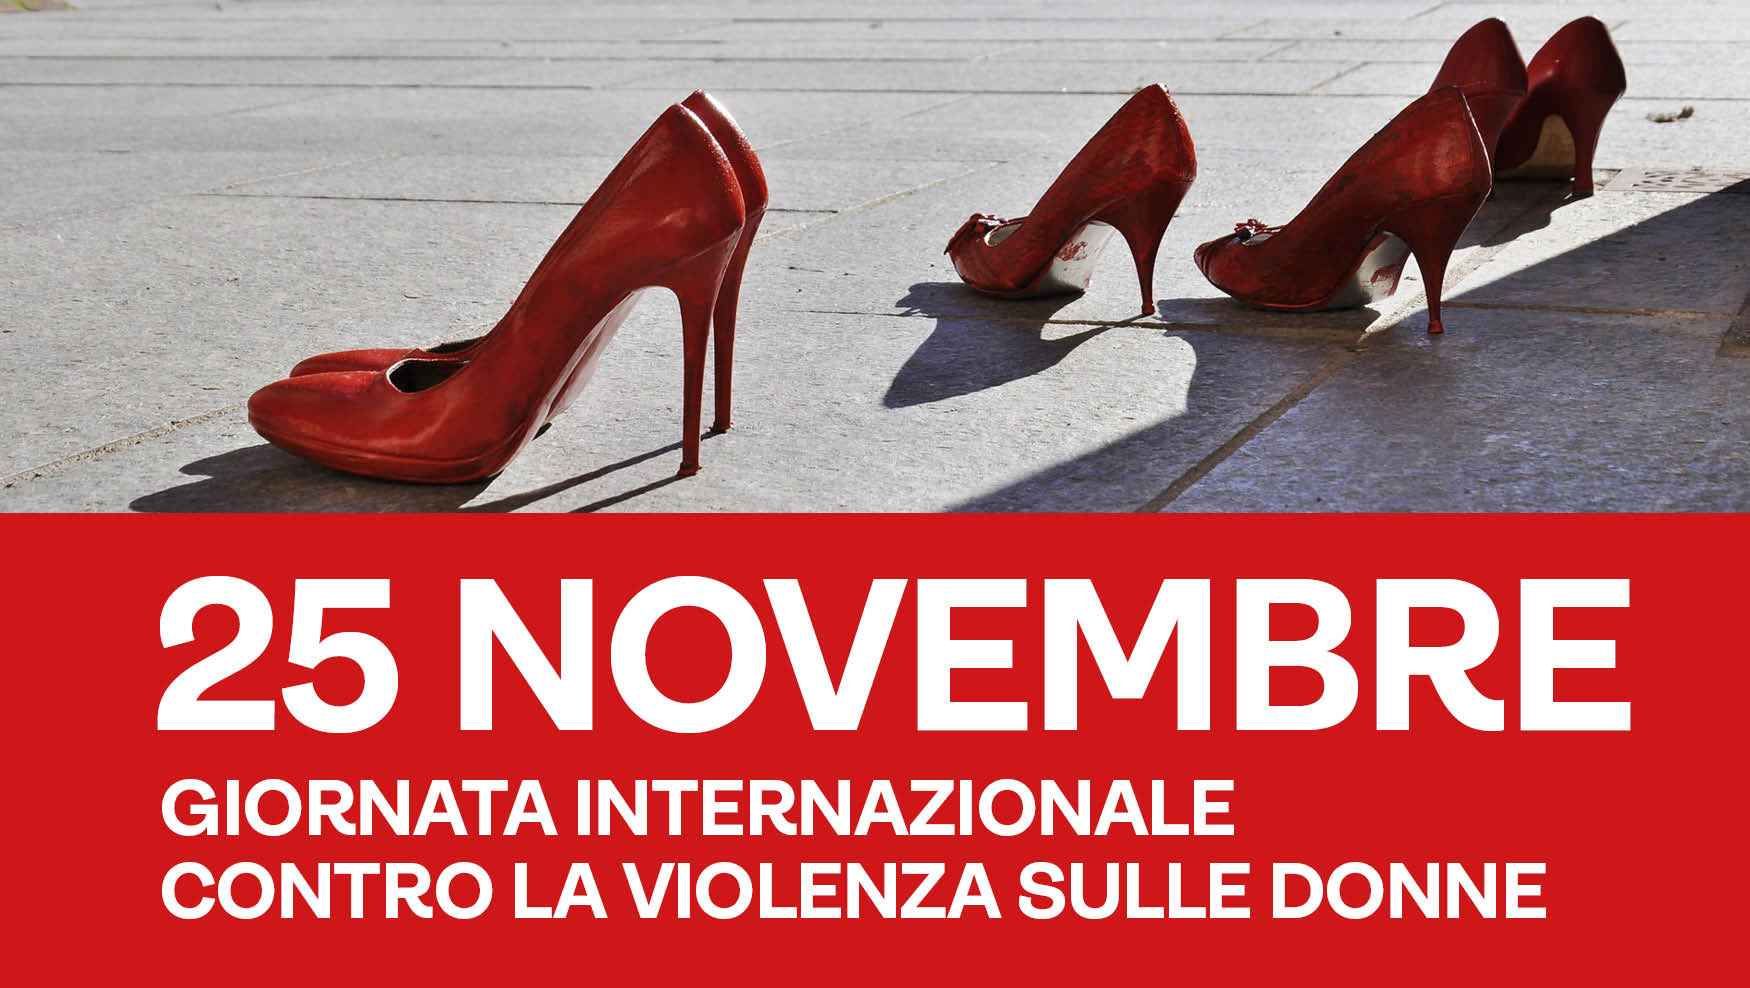 Gli eventi UniSi contro la violenza sulle donne. Domani il presidio in ricordo di Giulia Cecchettin